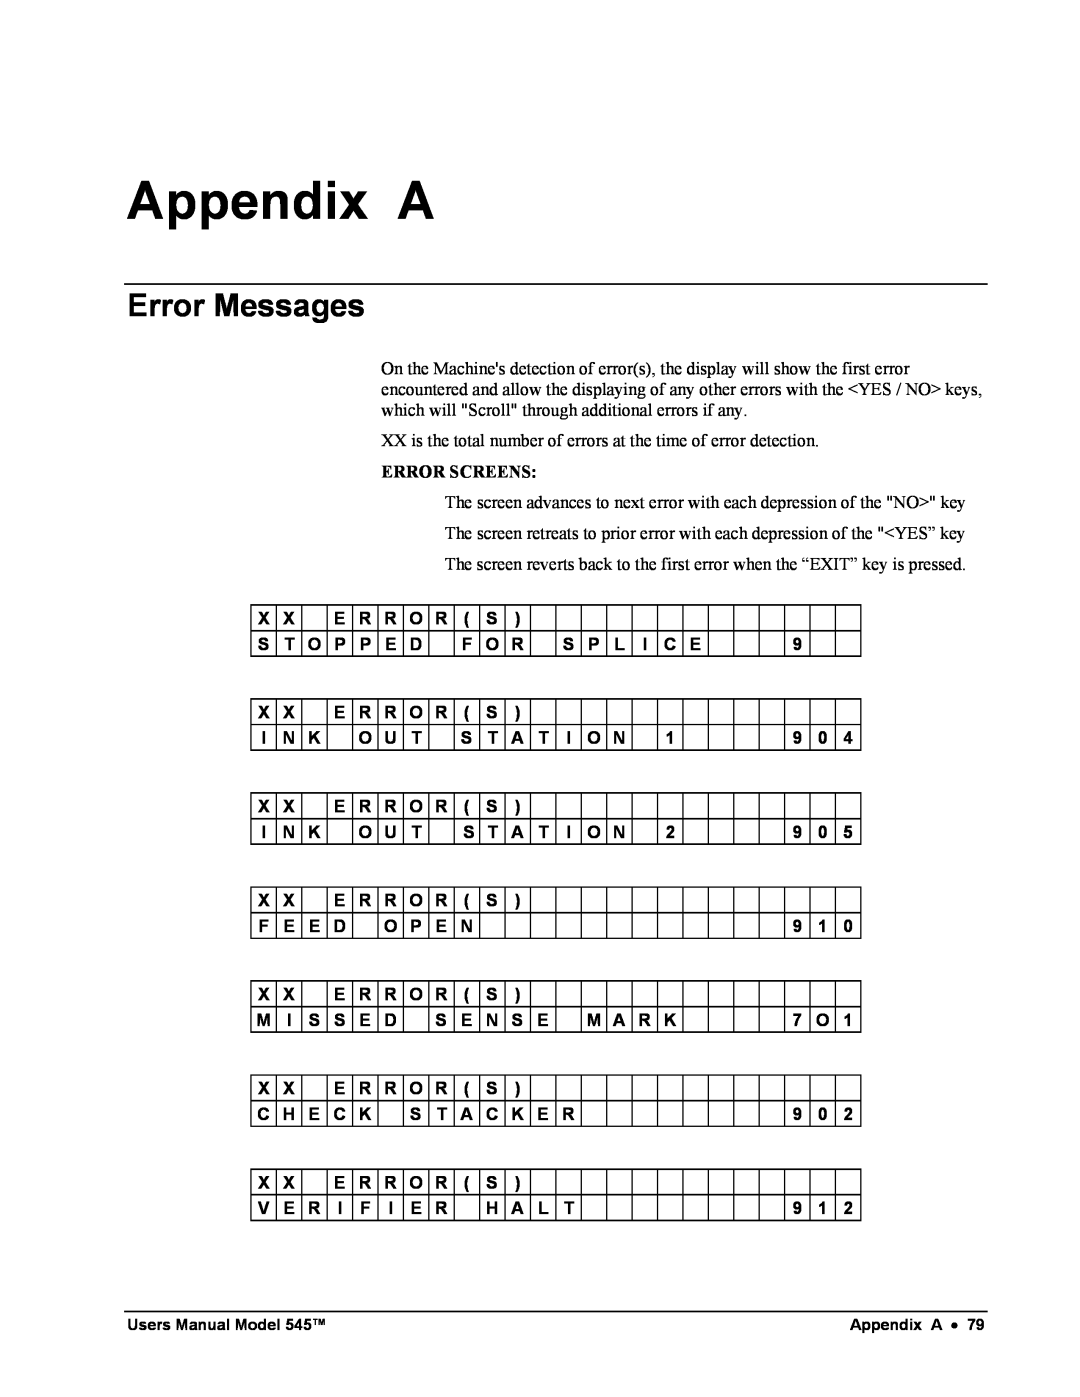 Paxar 545 user manual Appendix A, Error Messages 